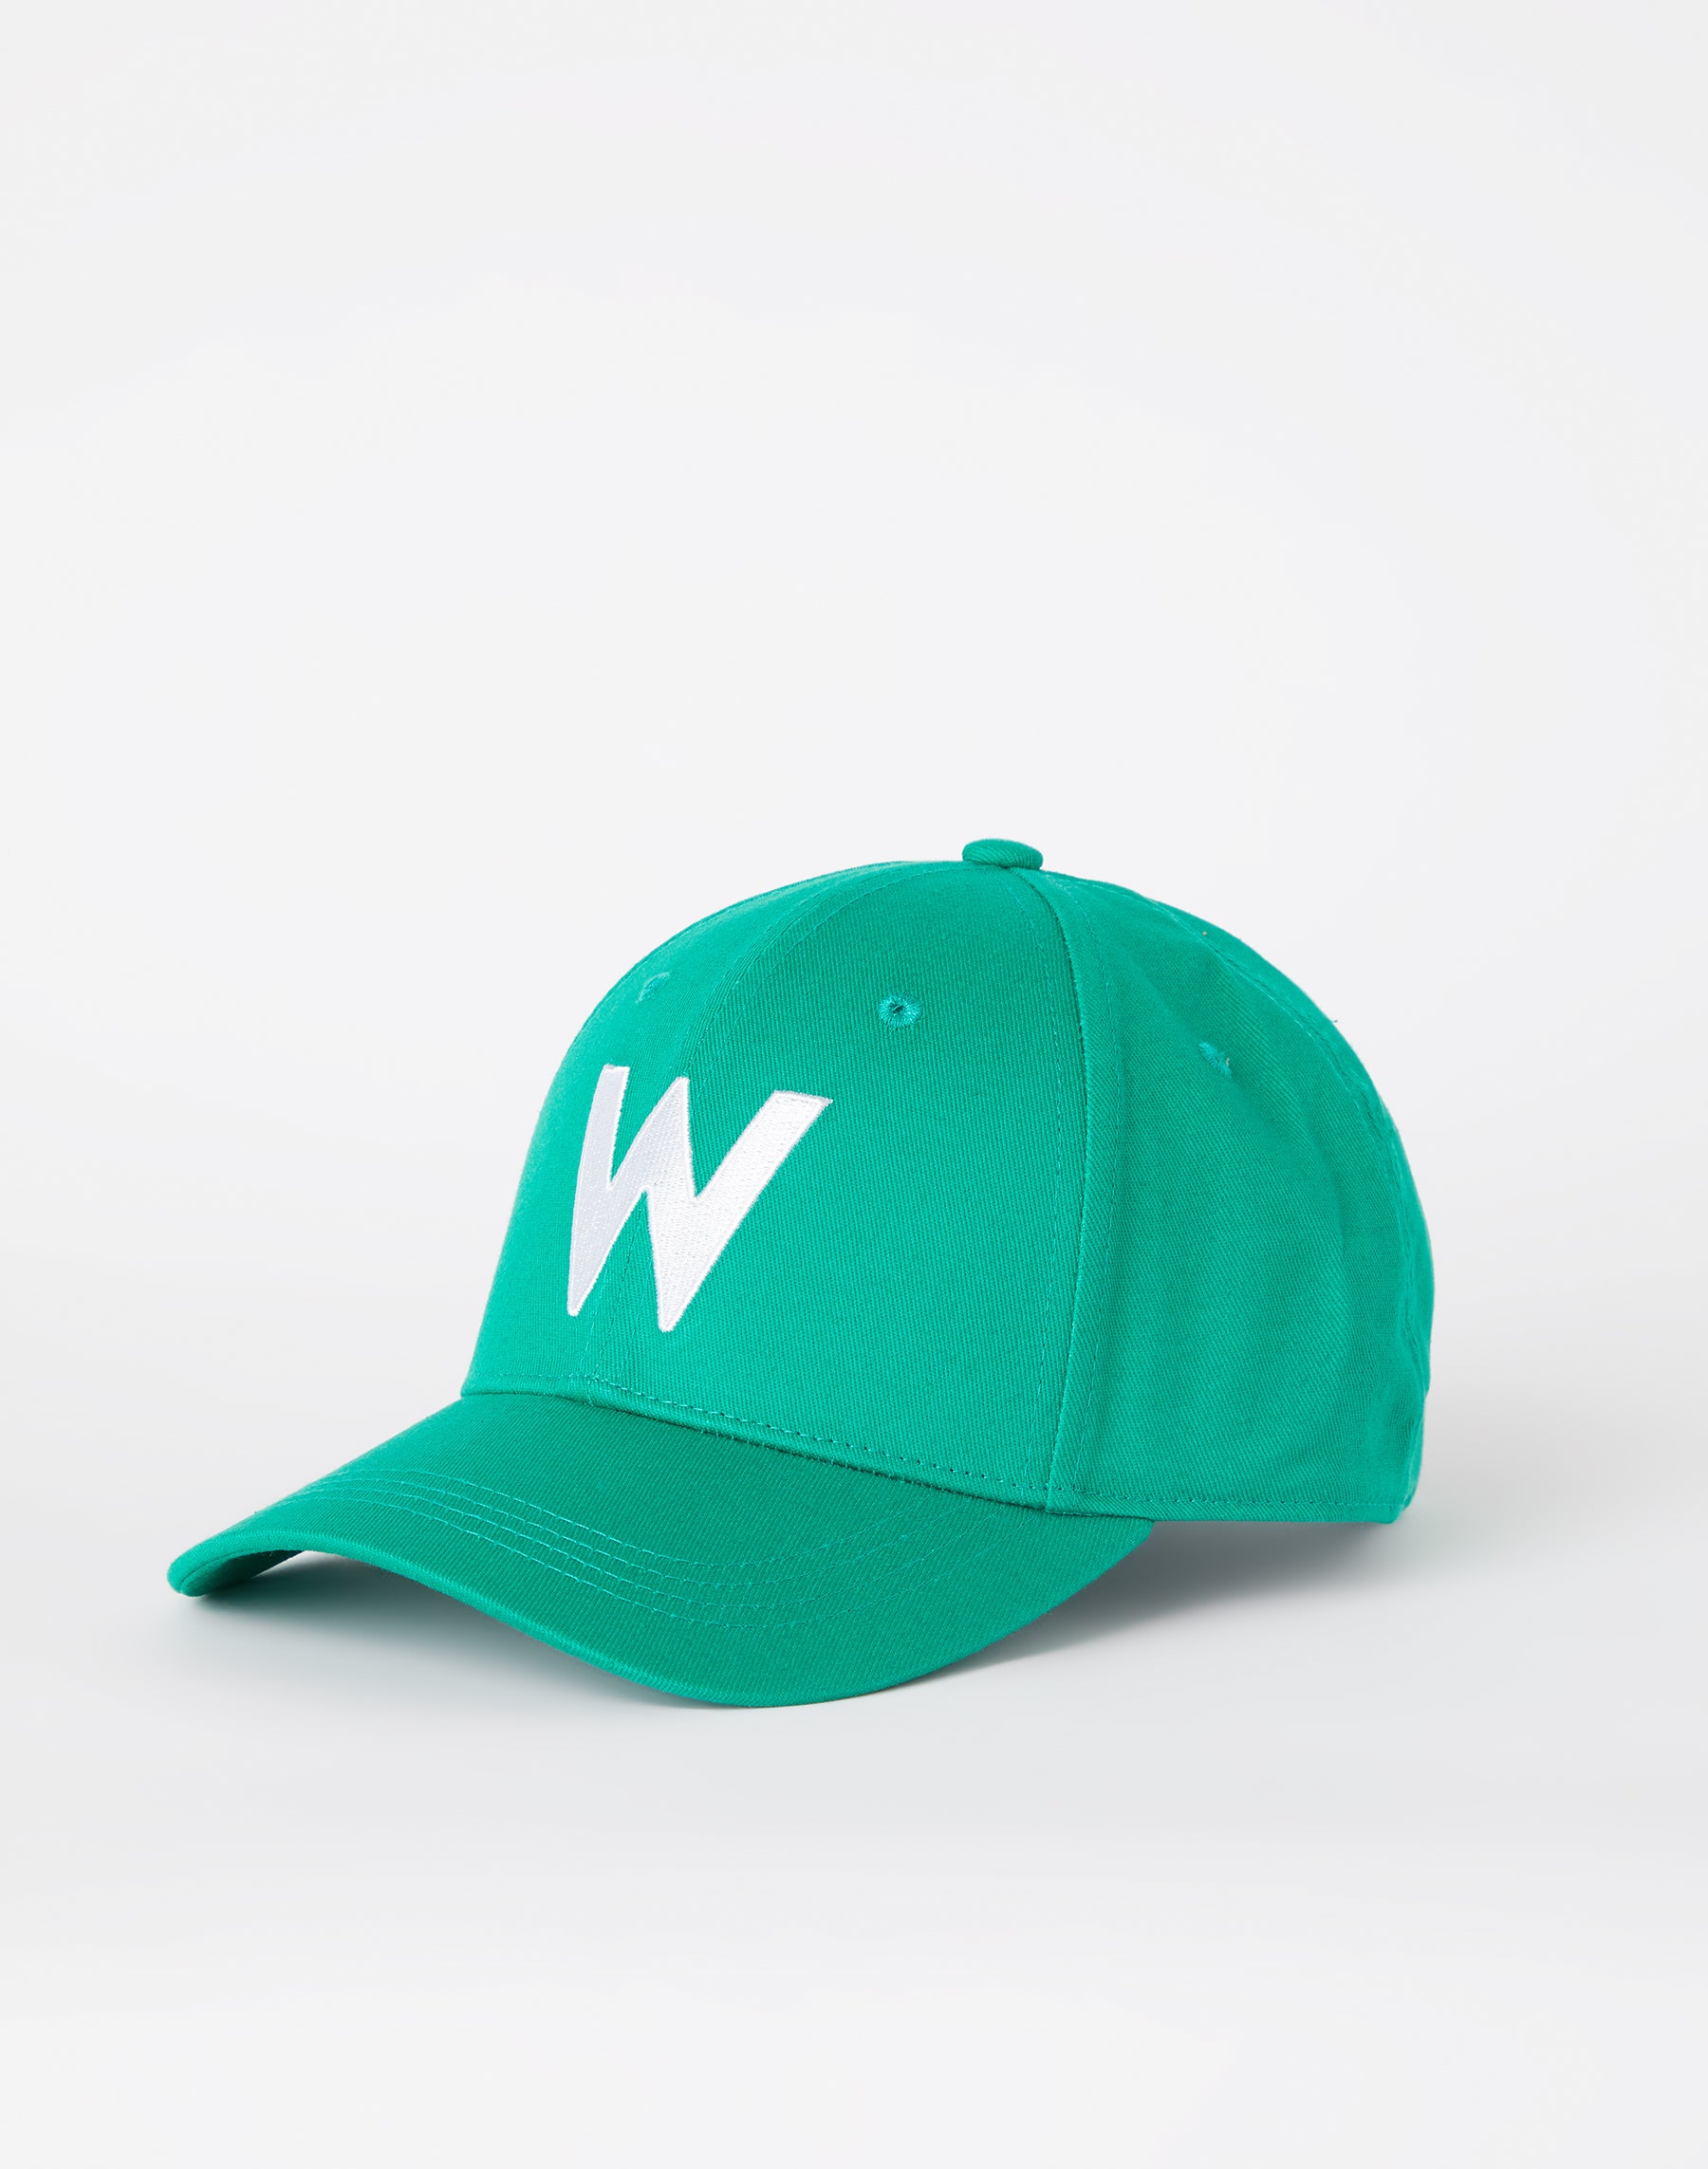 W Logo Cap in Leprechaun Green Caps Wrangler   